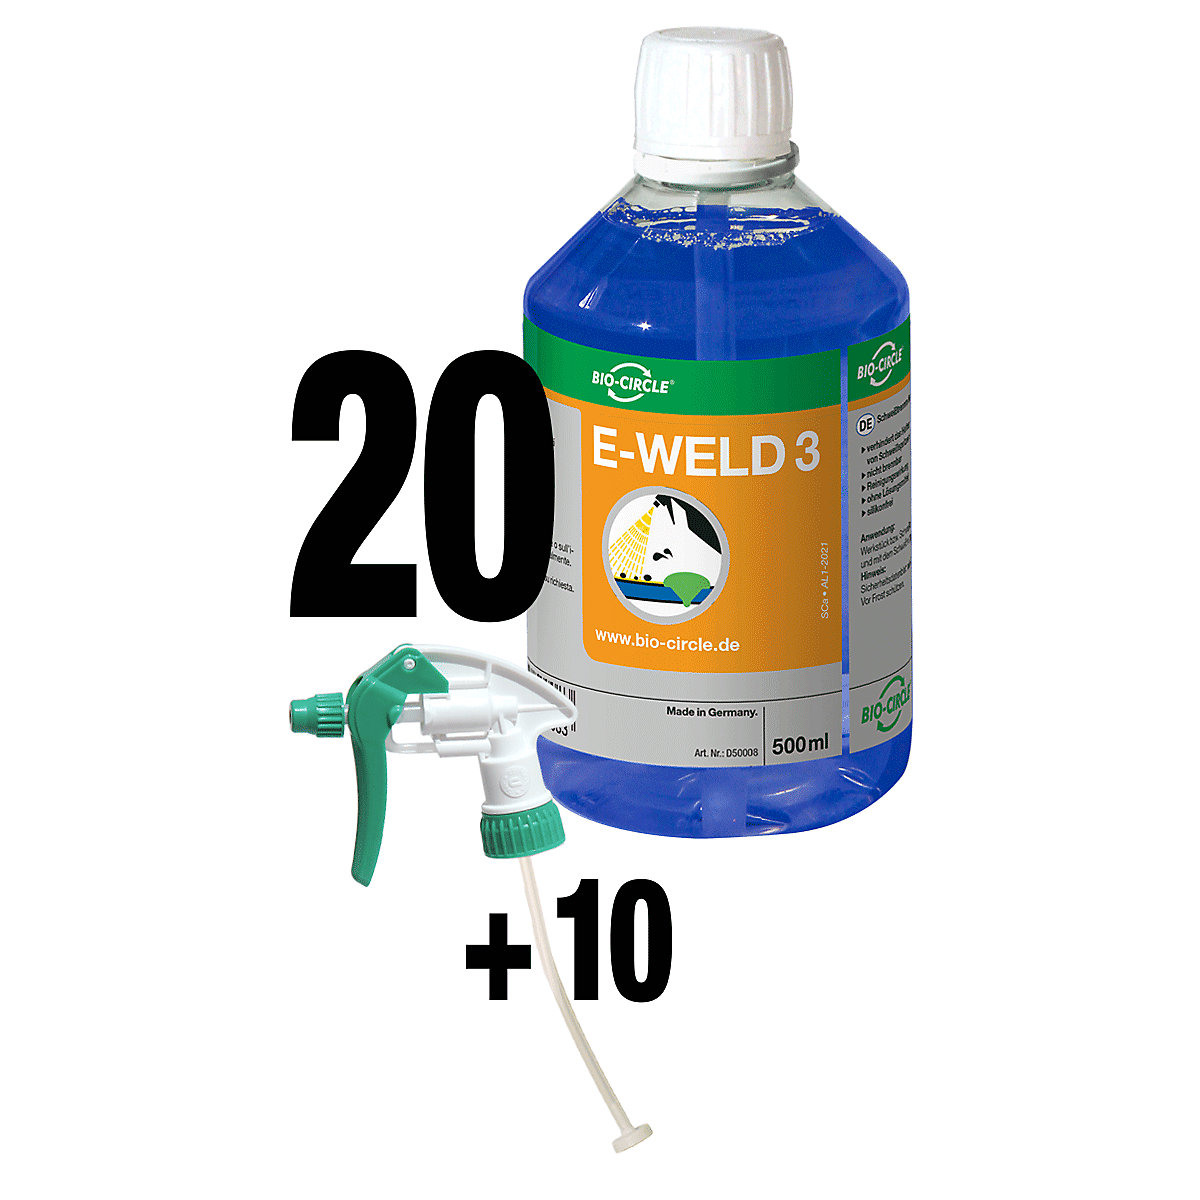 Ochranný sprej na zváranie E-WELD 3 – Bio-Circle